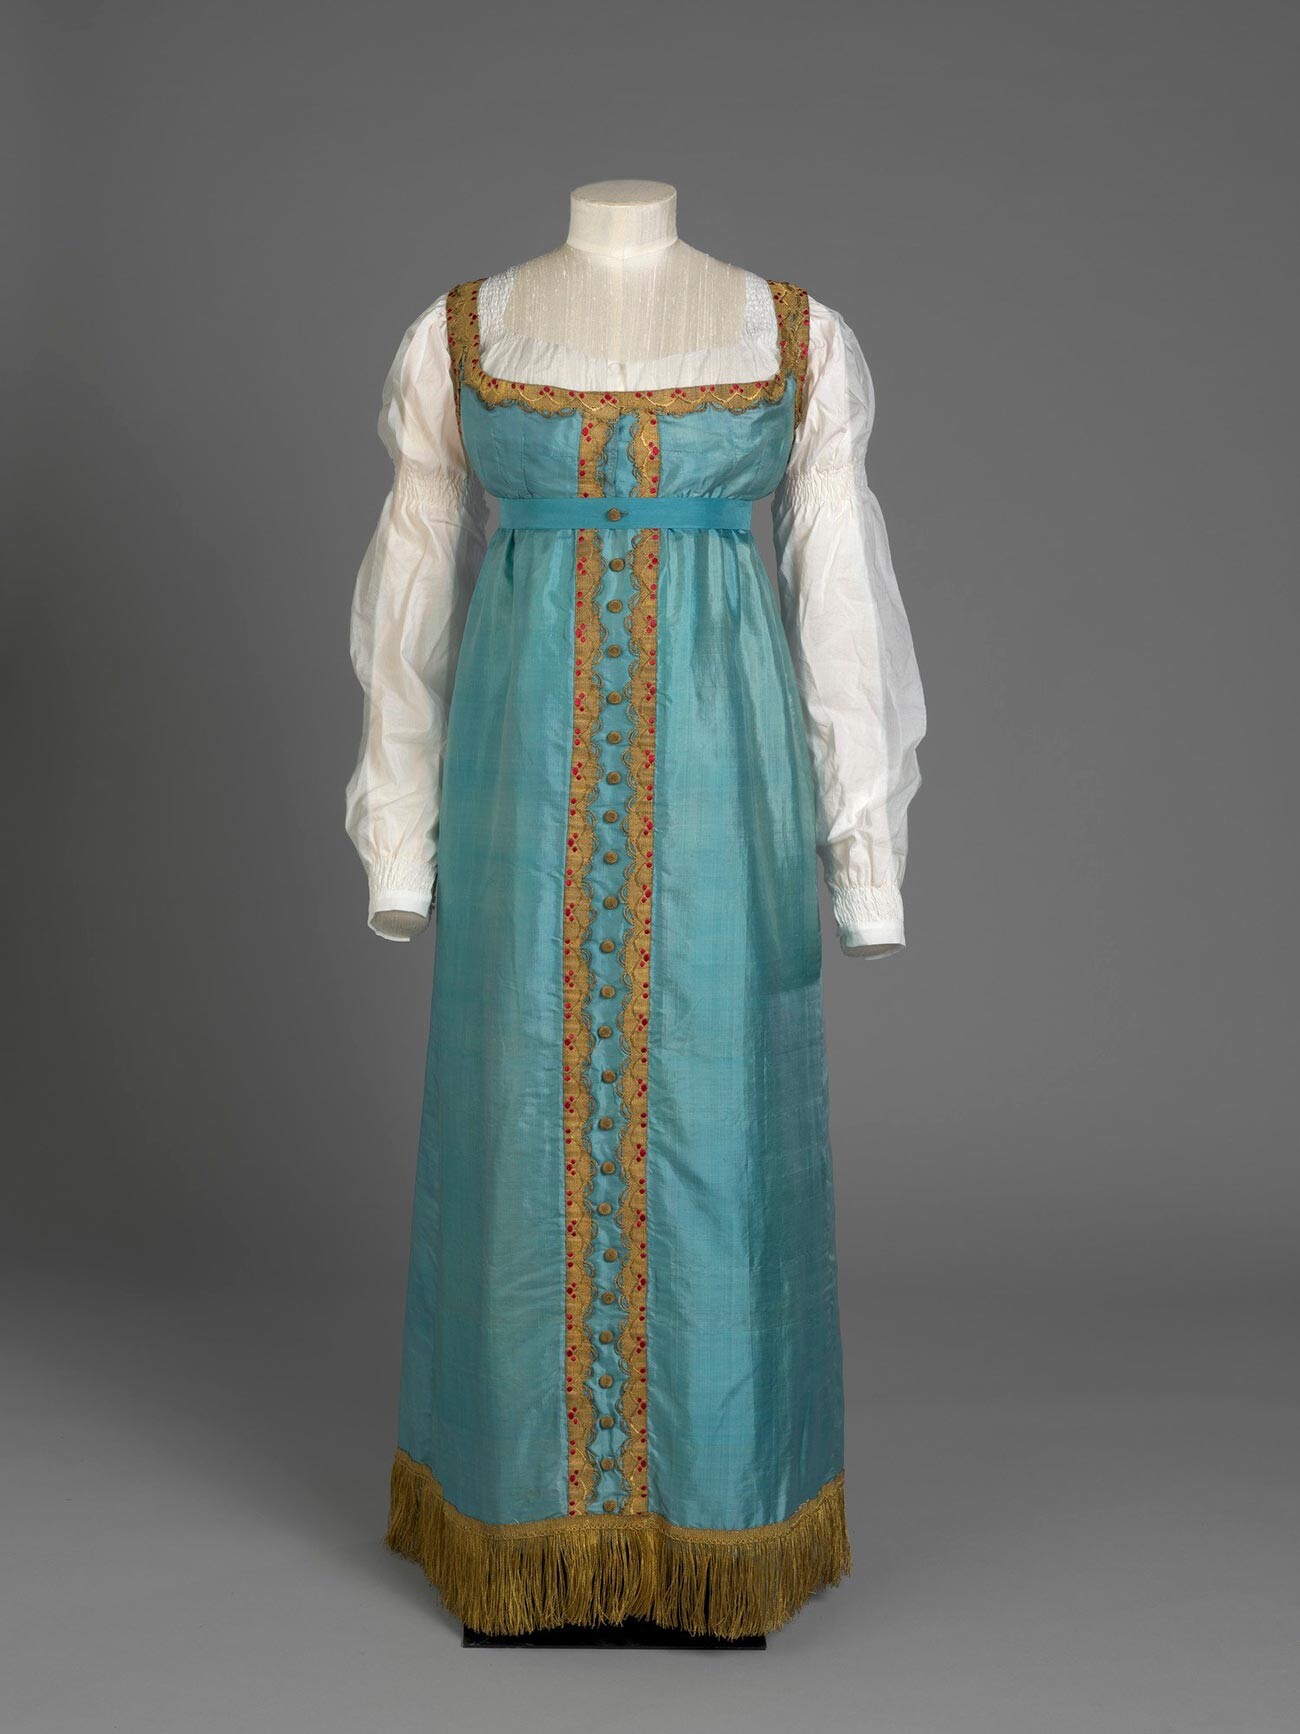 Vestido de estilo ruso de la princesa Charlotte, c. 1817.
